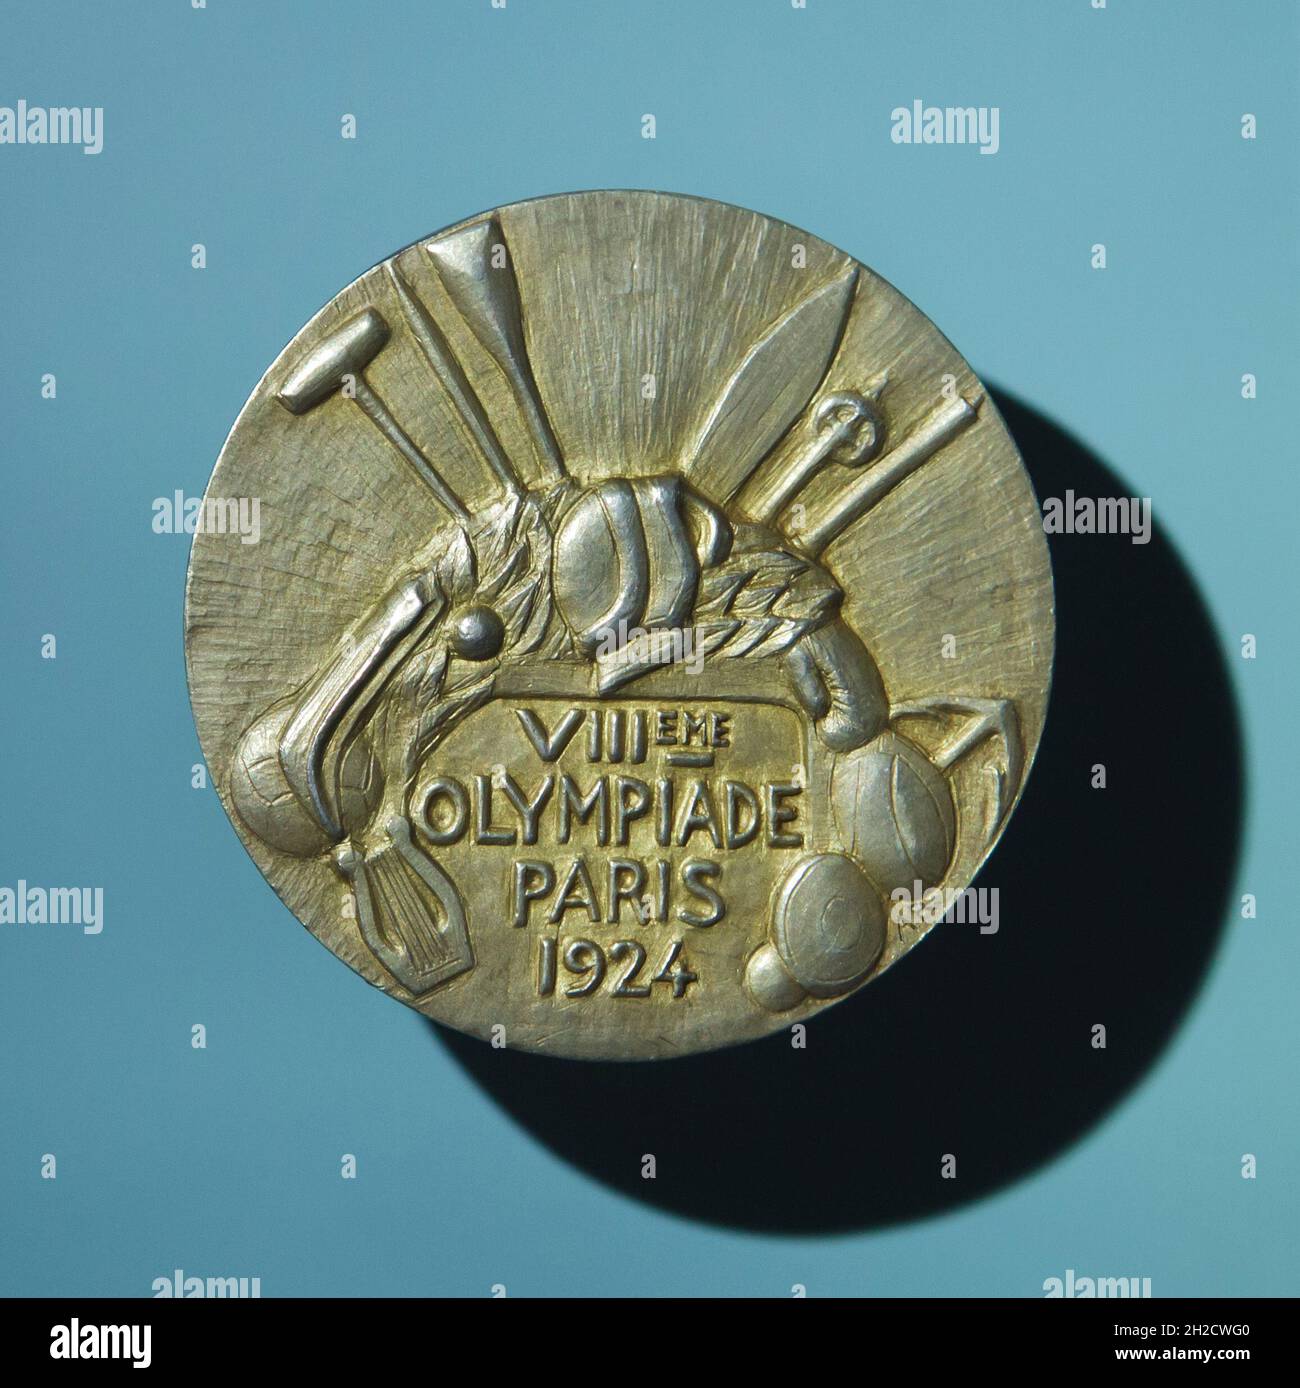 Médaille d'or olympique remportée par le gymnaste tchèque Bedřich Šupčík pour l'escalade de cordes aux Jeux Olympiques d'été 1924 à Paris, au Musée national (Národní muzeum) à Prague, République tchèque.Cette médaille conçue par le graveur de médailles français André Rivaud a été la première médaille d'or olympique remportée par le concurrent tchécoslovaque aux Jeux Olympiques.La médaille est en vue de la nouvelle exposition permanente du Musée national consacrée à l'histoire du XXe siècle. Banque D'Images